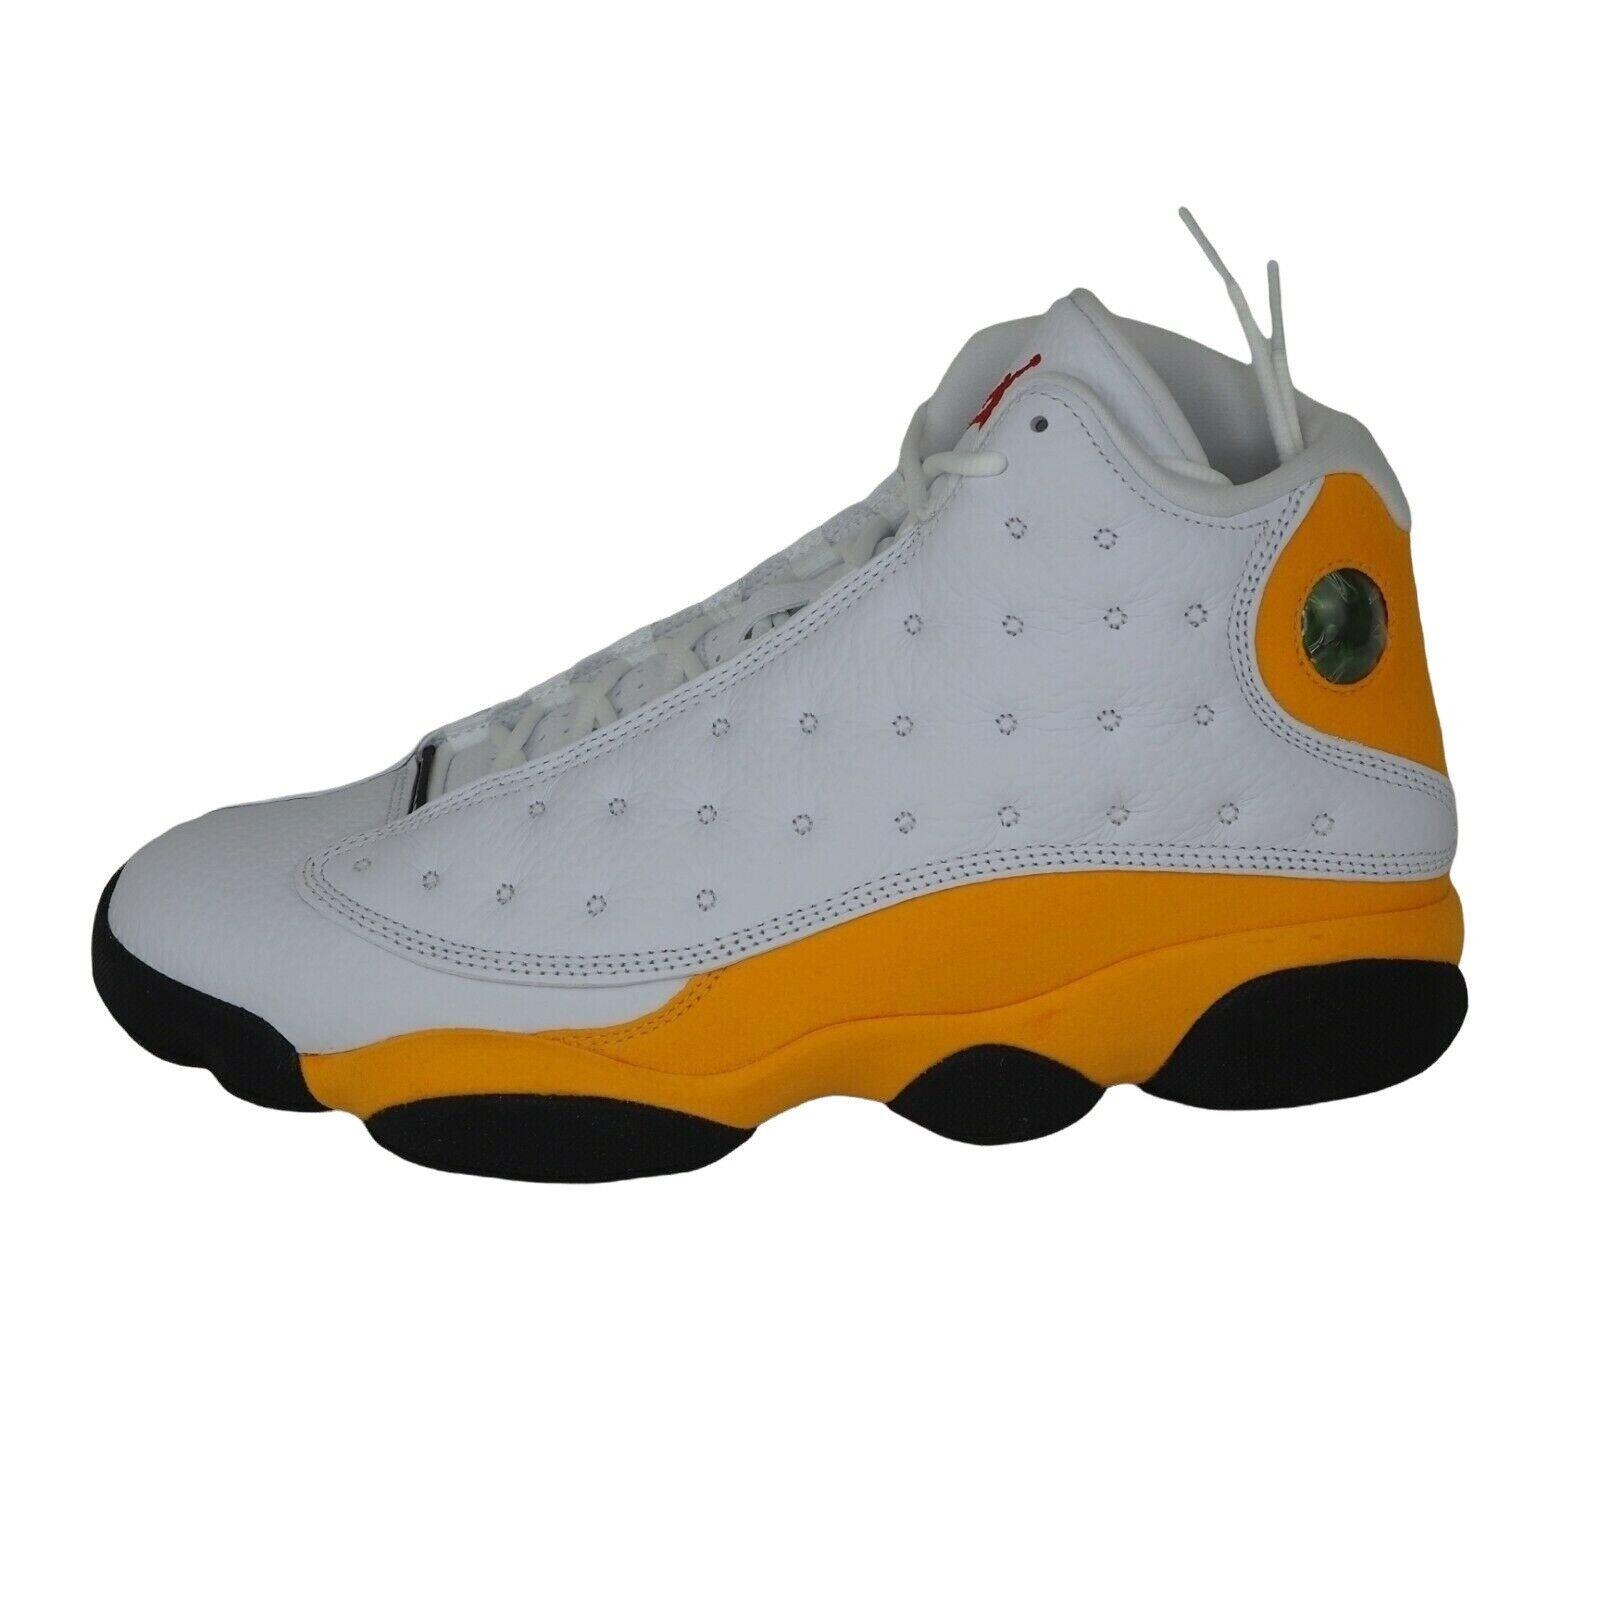 Nike men's nike air jordan xiii shoes Air Jordan 13 Retro Del Sol 414571 167 Sneakers Men Shoes